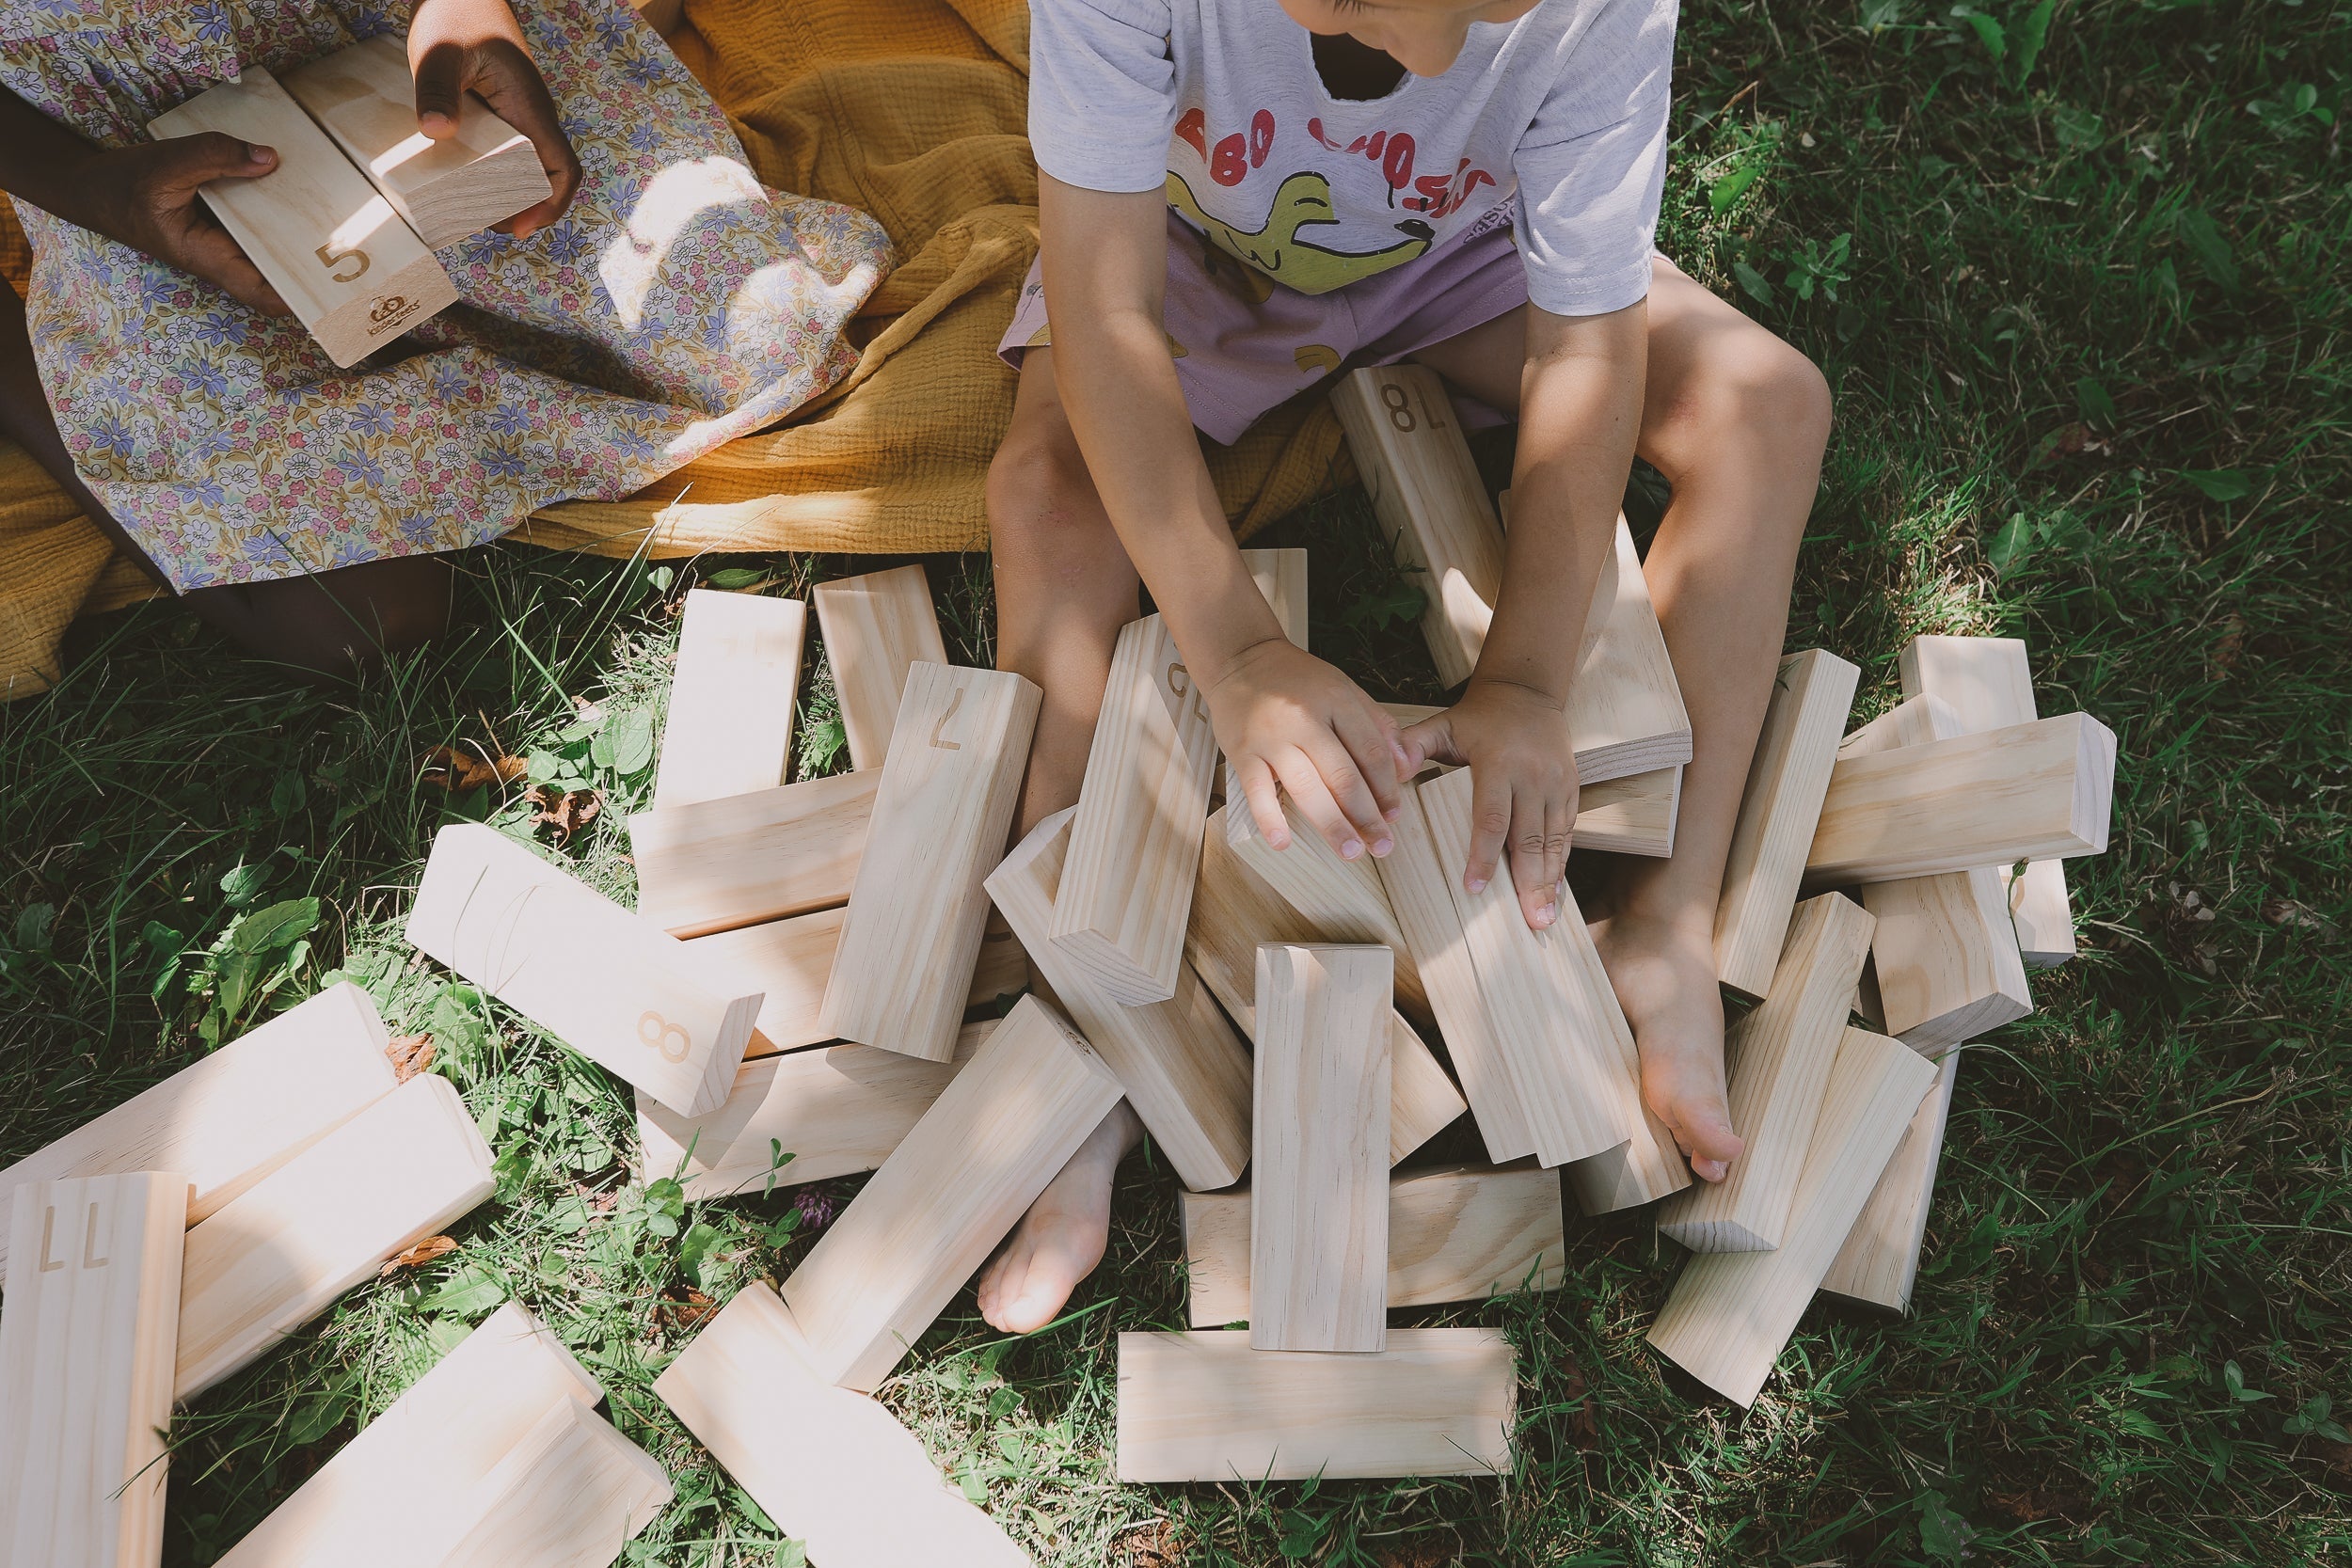 Kinderfeets Riesige Stapler der Liebe: Kinderfeets Gigantische Stapler aus Naturholz 💕